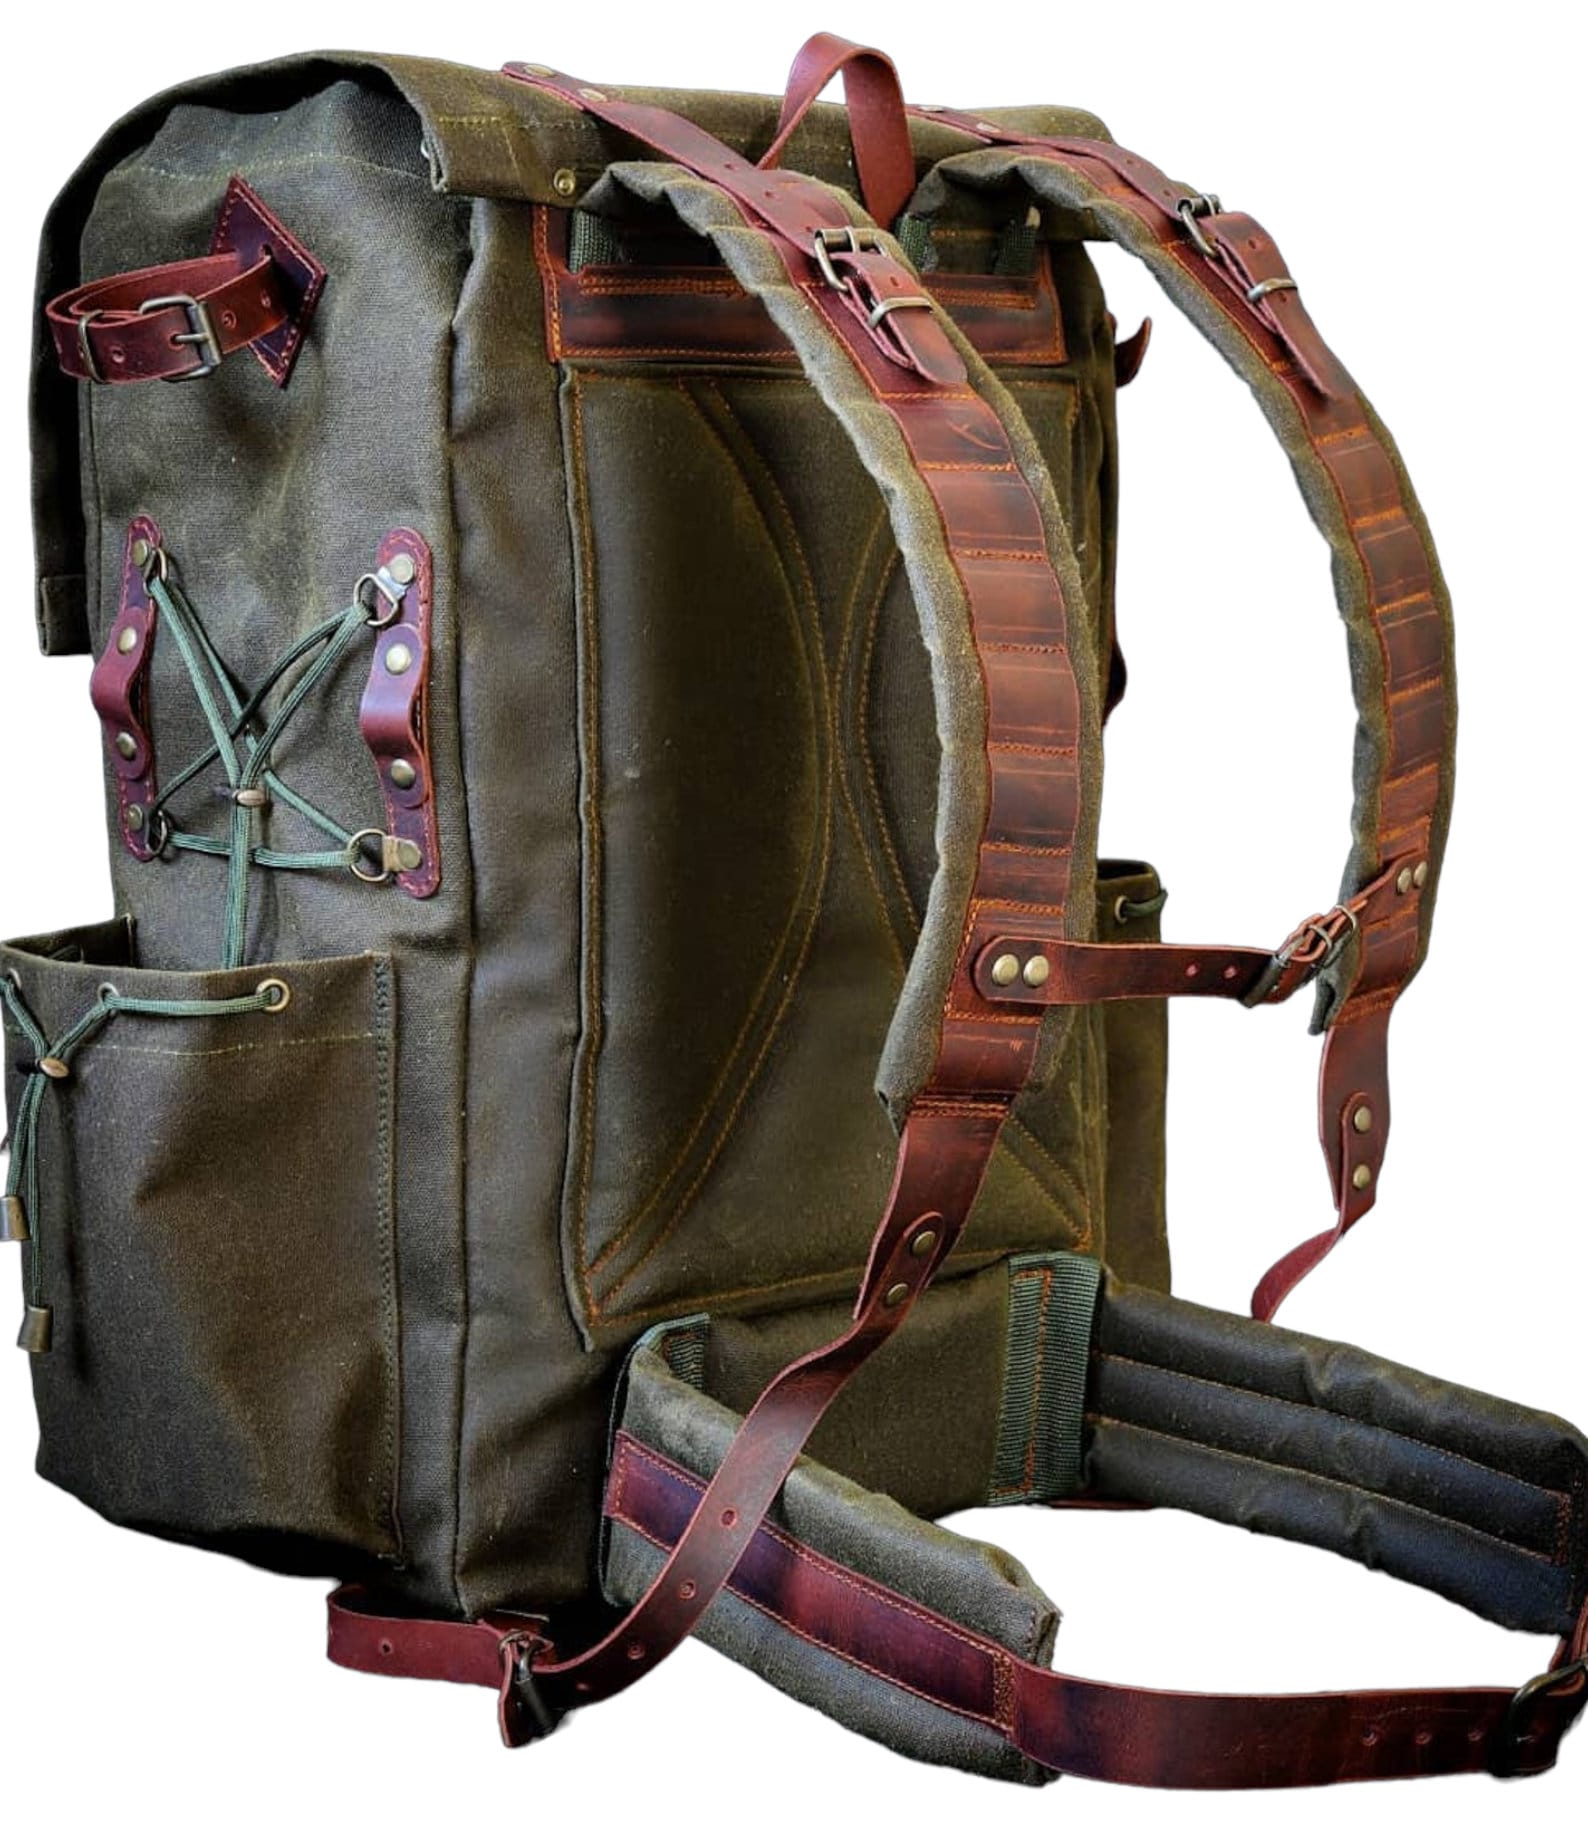 Hiking | Canvas Flap | Hiking Backpack | Hiking Bag | Leather and Canvas Backpack | Leather | Canvas | Camping Backpack | Camping | Rucksack bushcraft - camping - hiking backpack 99percenthandmade   